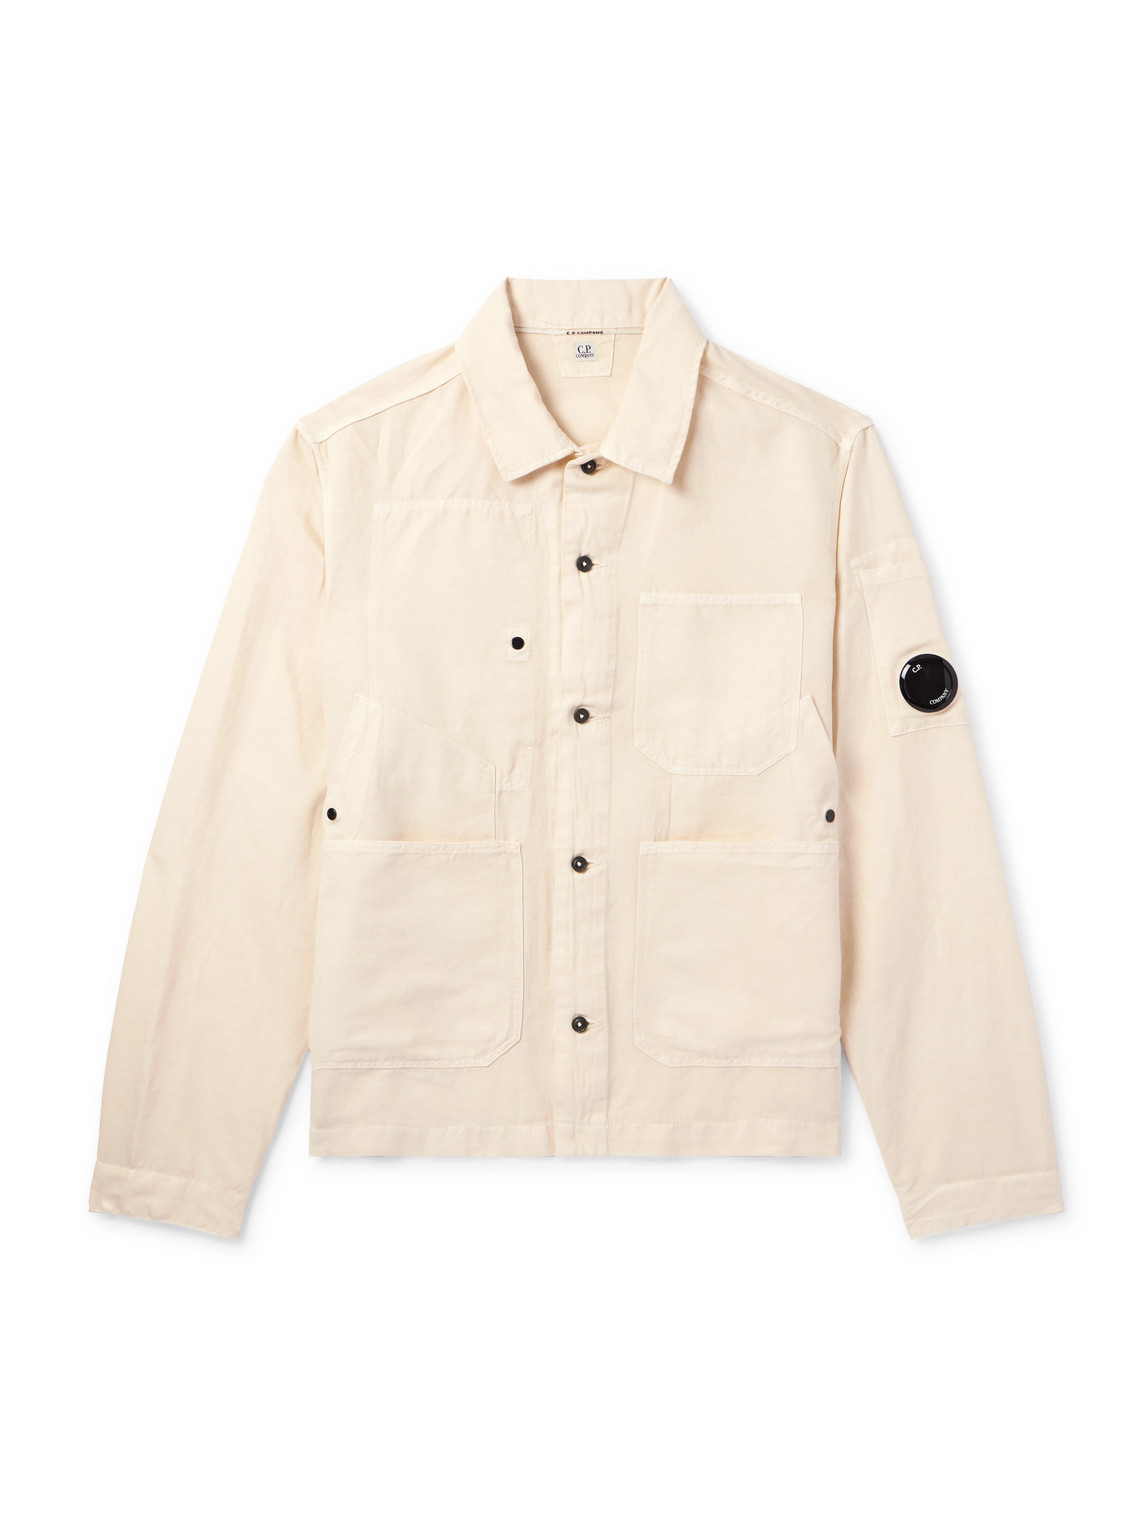 C.P. Company - Logo-Appliquéd Cotton and Linen-Blend Overshirt - Men - Neutrals - M von C.P. Company